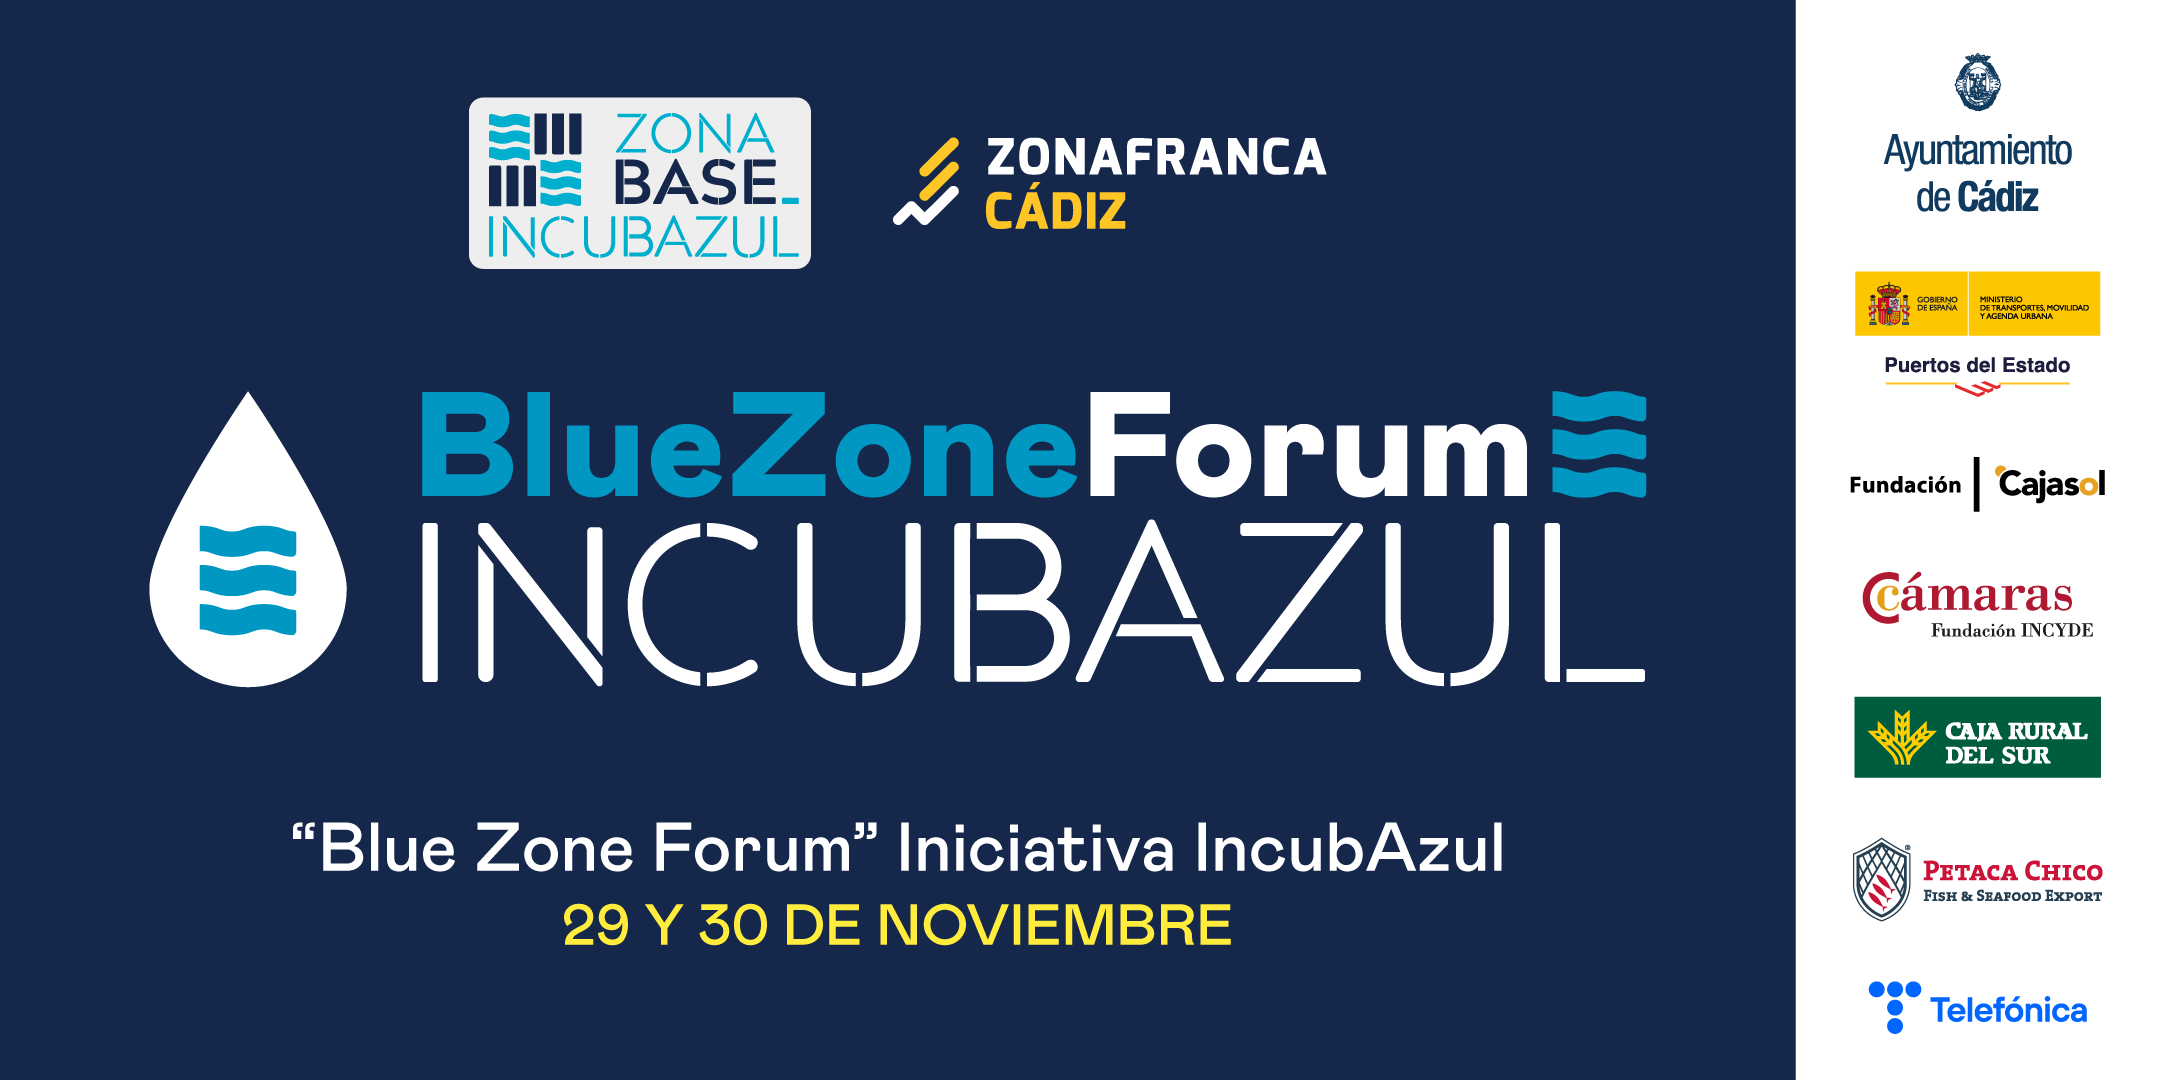 Gracias por vuestro interés en formar parte de Blue Zone Forum. Más de 900 personas se sumergirán en el futuro circular los días 29 y 30 de noviembre en Cádiz.